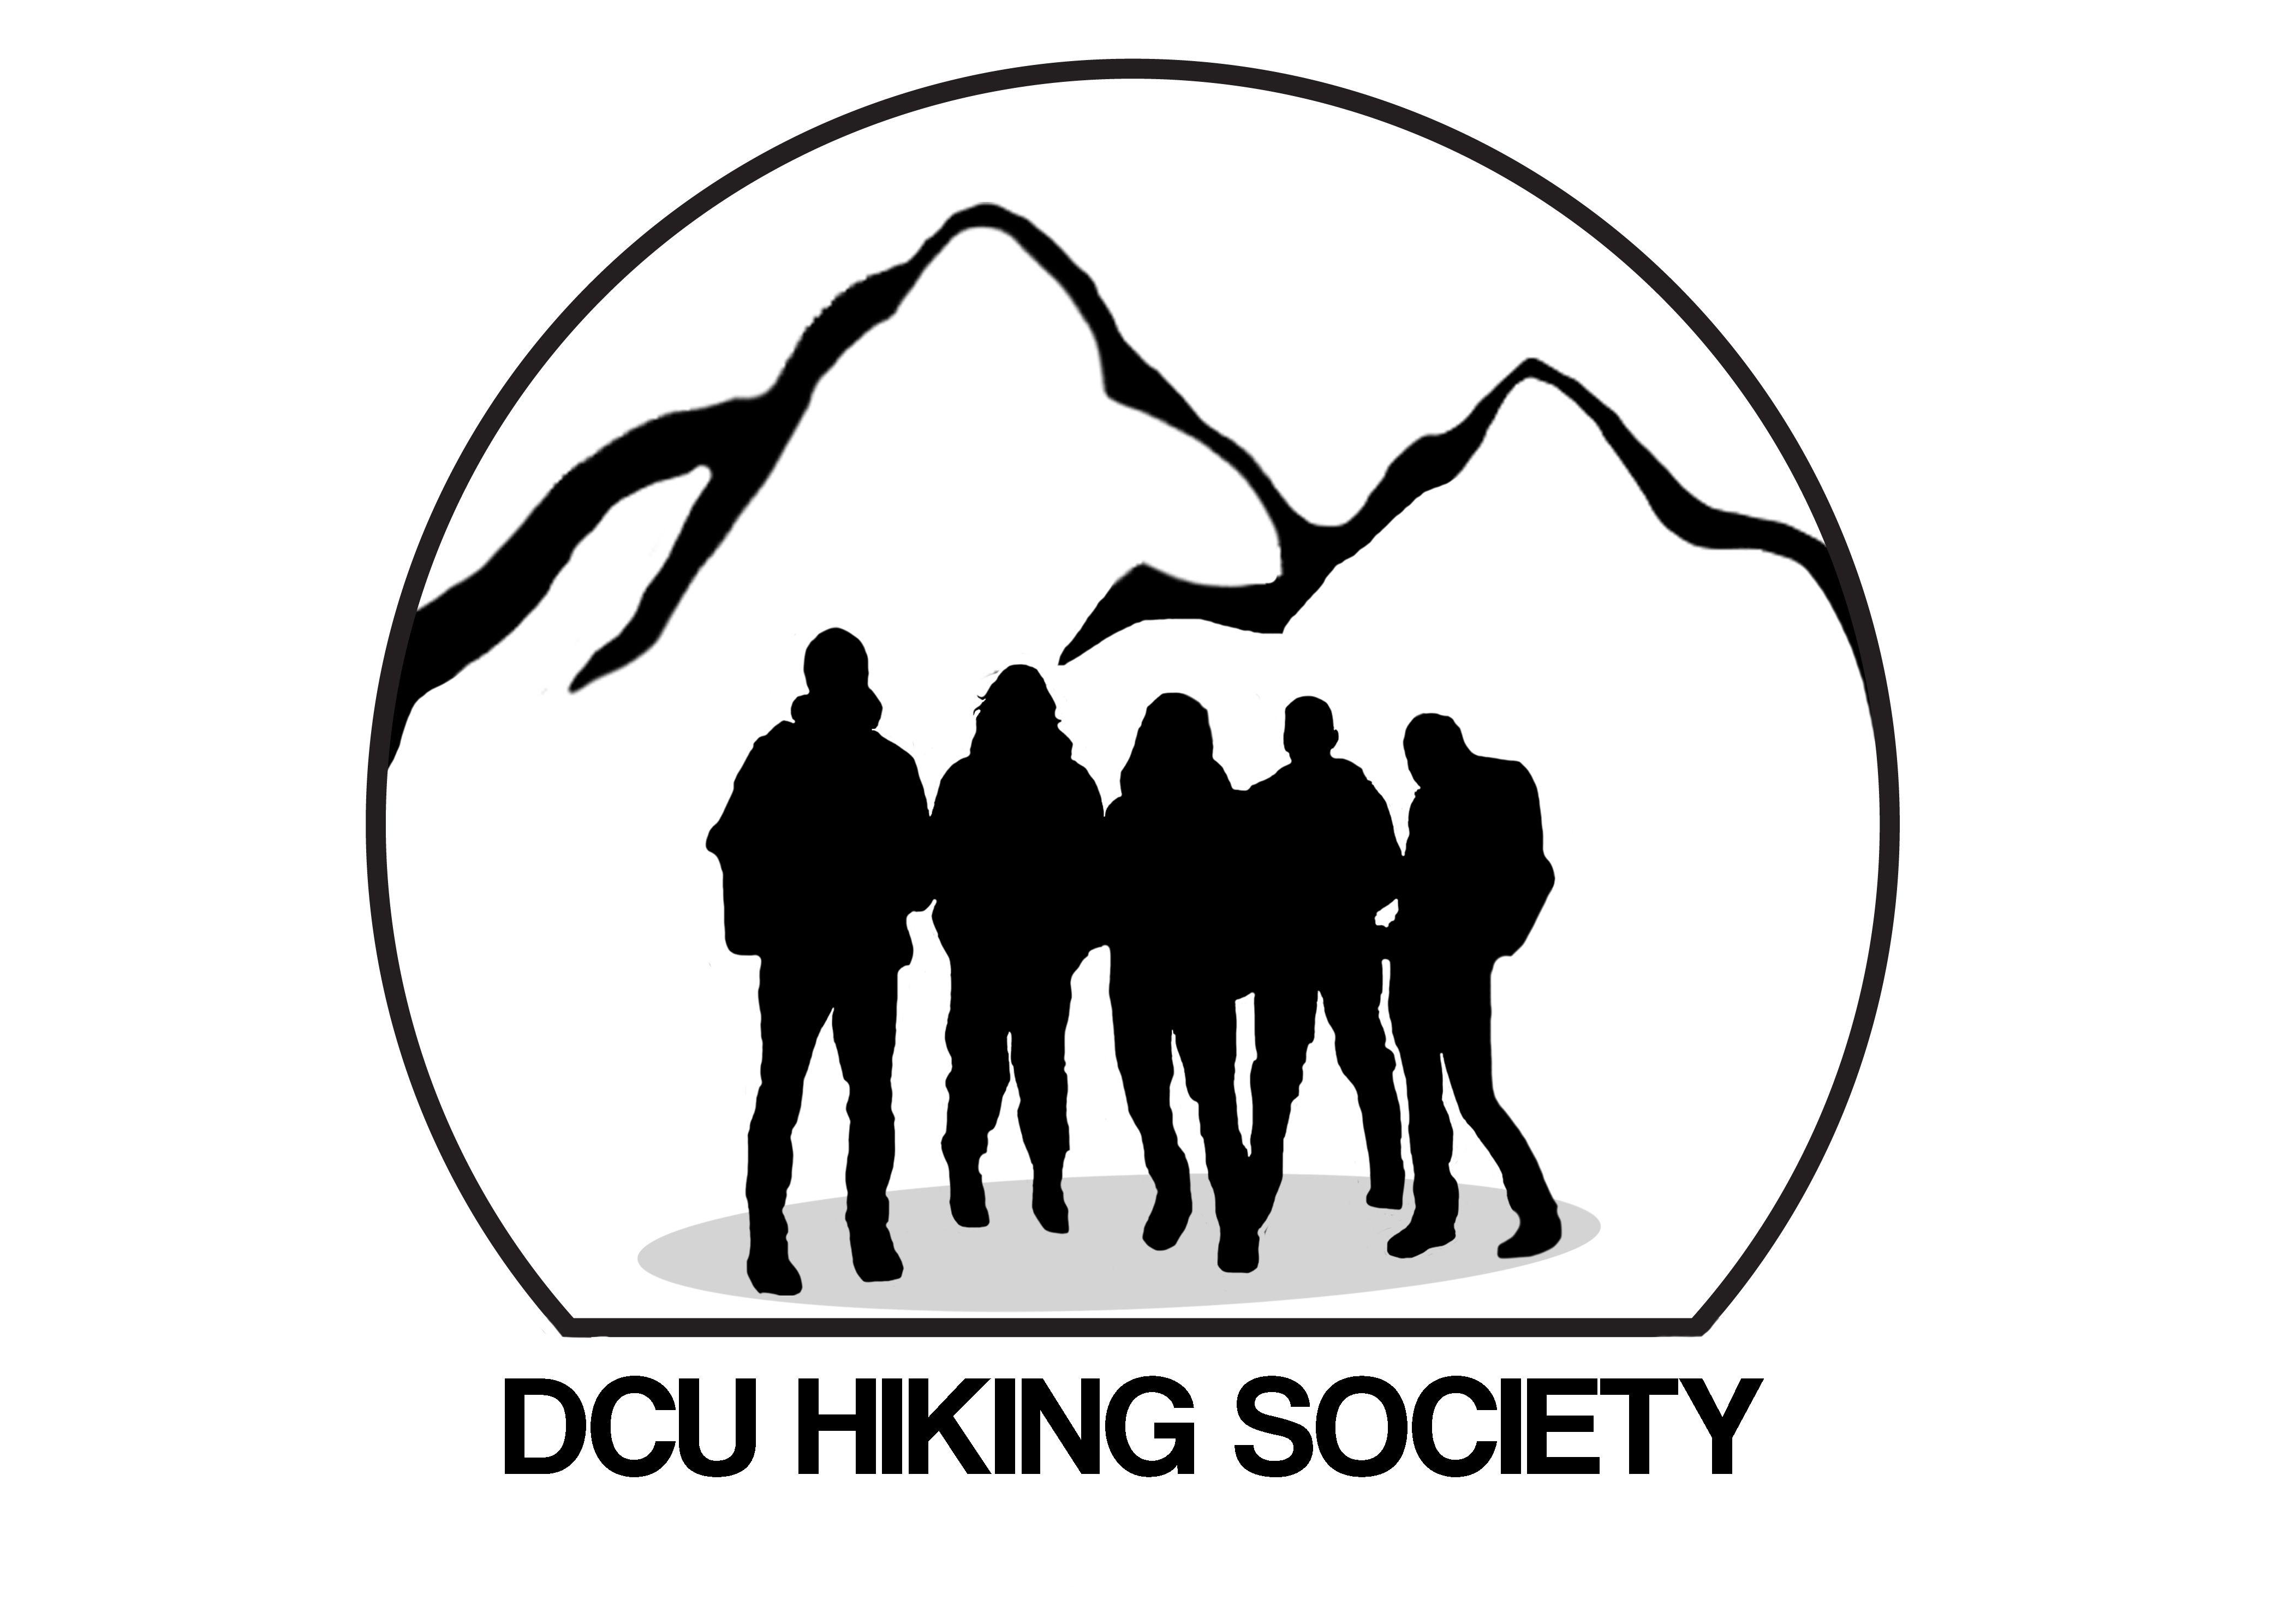 Hiker Logo - Hiking Logos